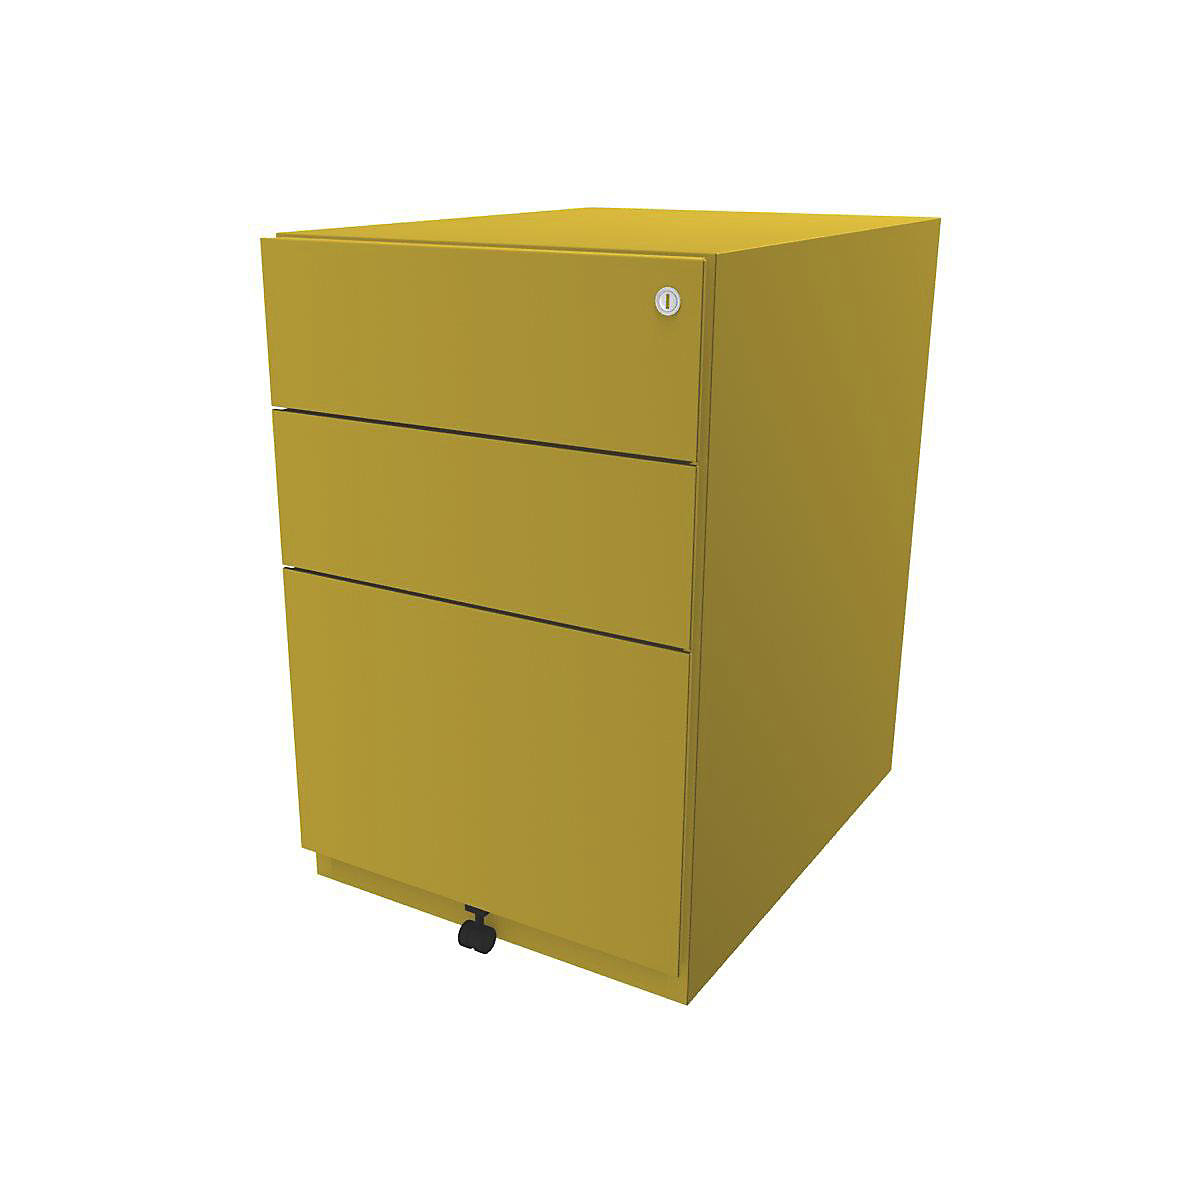 Pokretni ladičar Note™, s 2 univerzalne ladice, 1 element za vješanje registratora – BISLEY, VxŠxD 645 x 420 x 565 mm, u žutoj boji-8